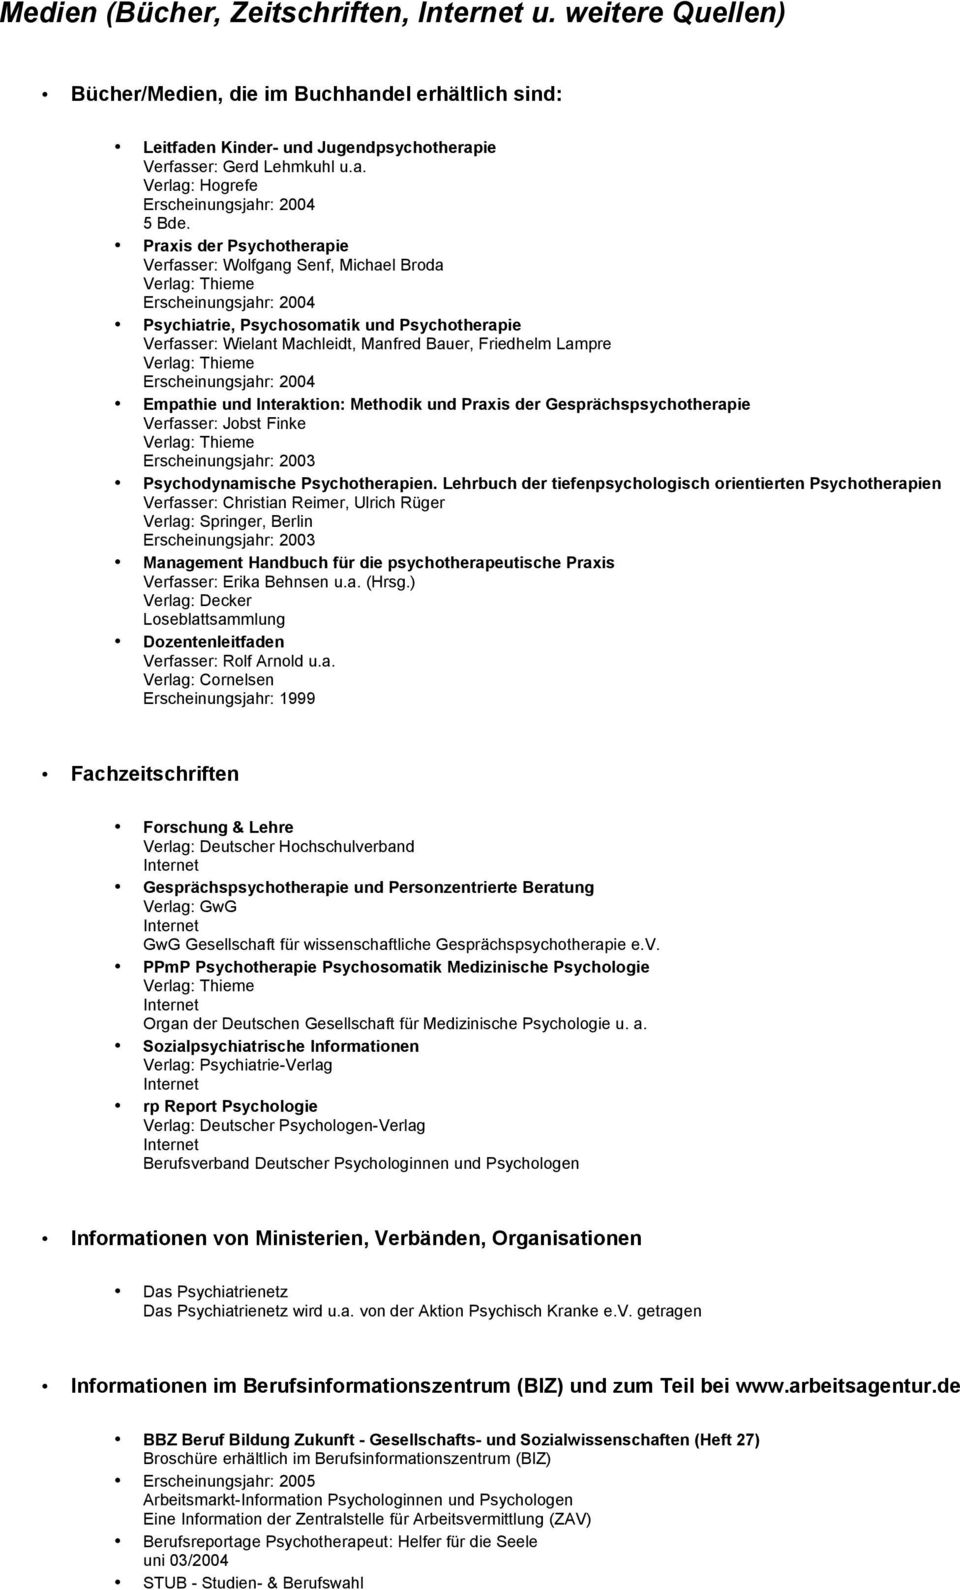 Methodik und Praxis der Gesprächspsychotherapie Verfasser: Jobst Finke Erscheinungsjahr: 2003 Psychodynamische Psychotherapien.